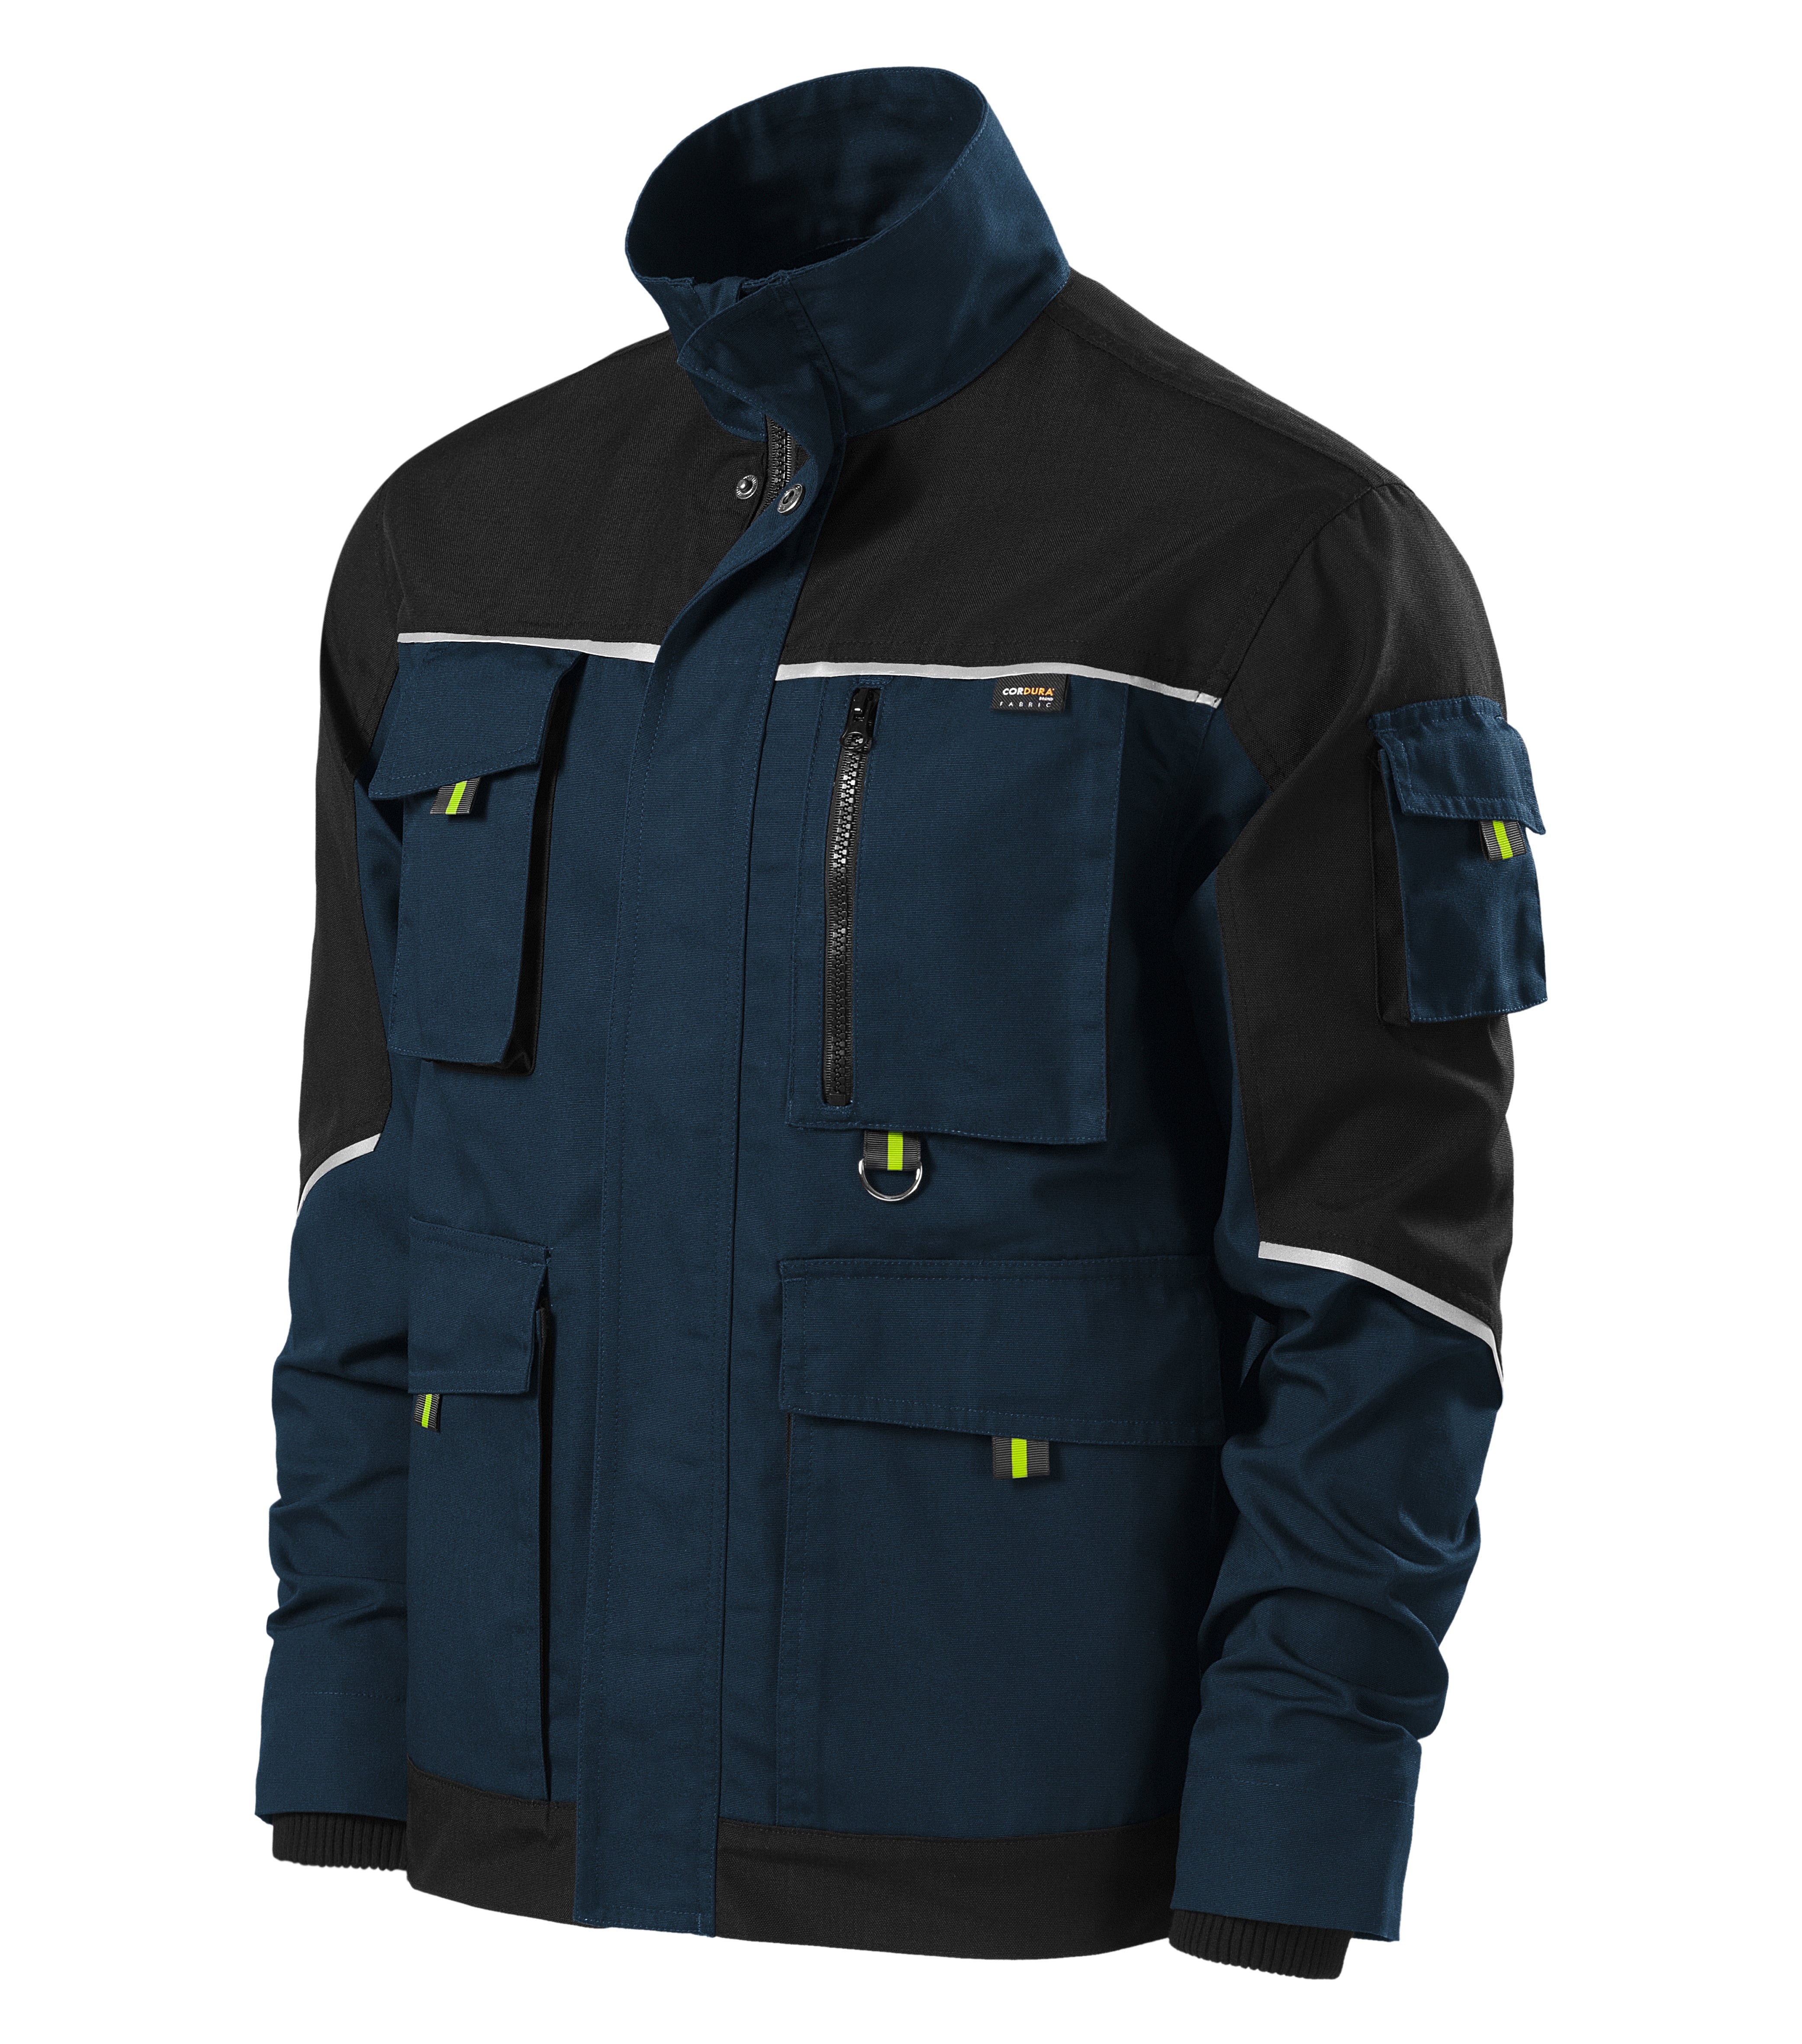 Ranger jachetă de lucru BW53